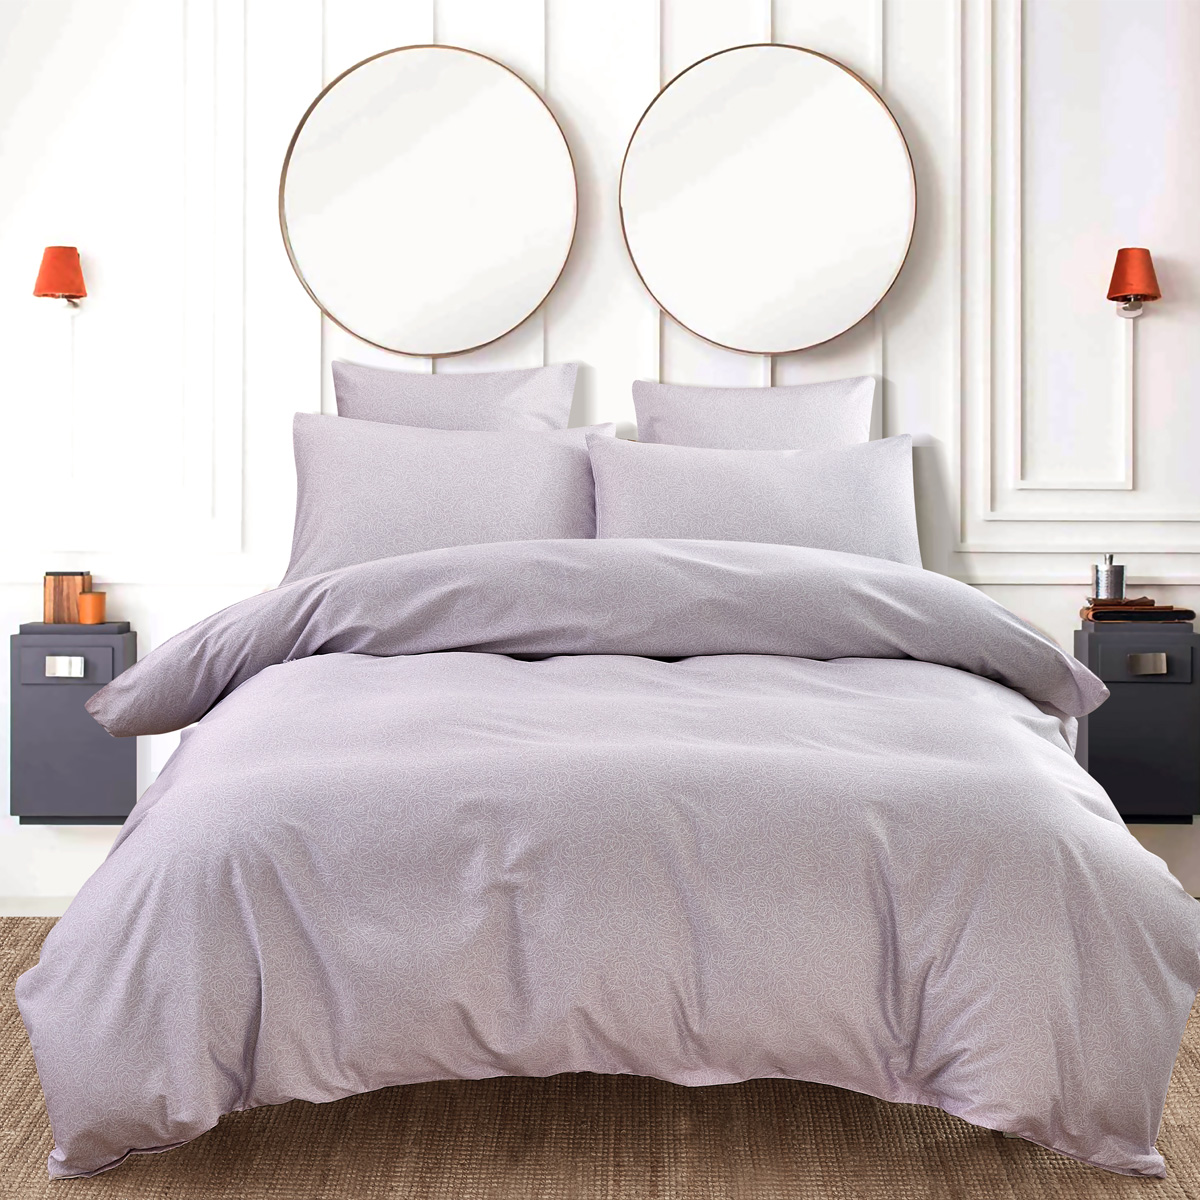 Комплект постельного белья 1,5-спальный Pappel Smooth lilac